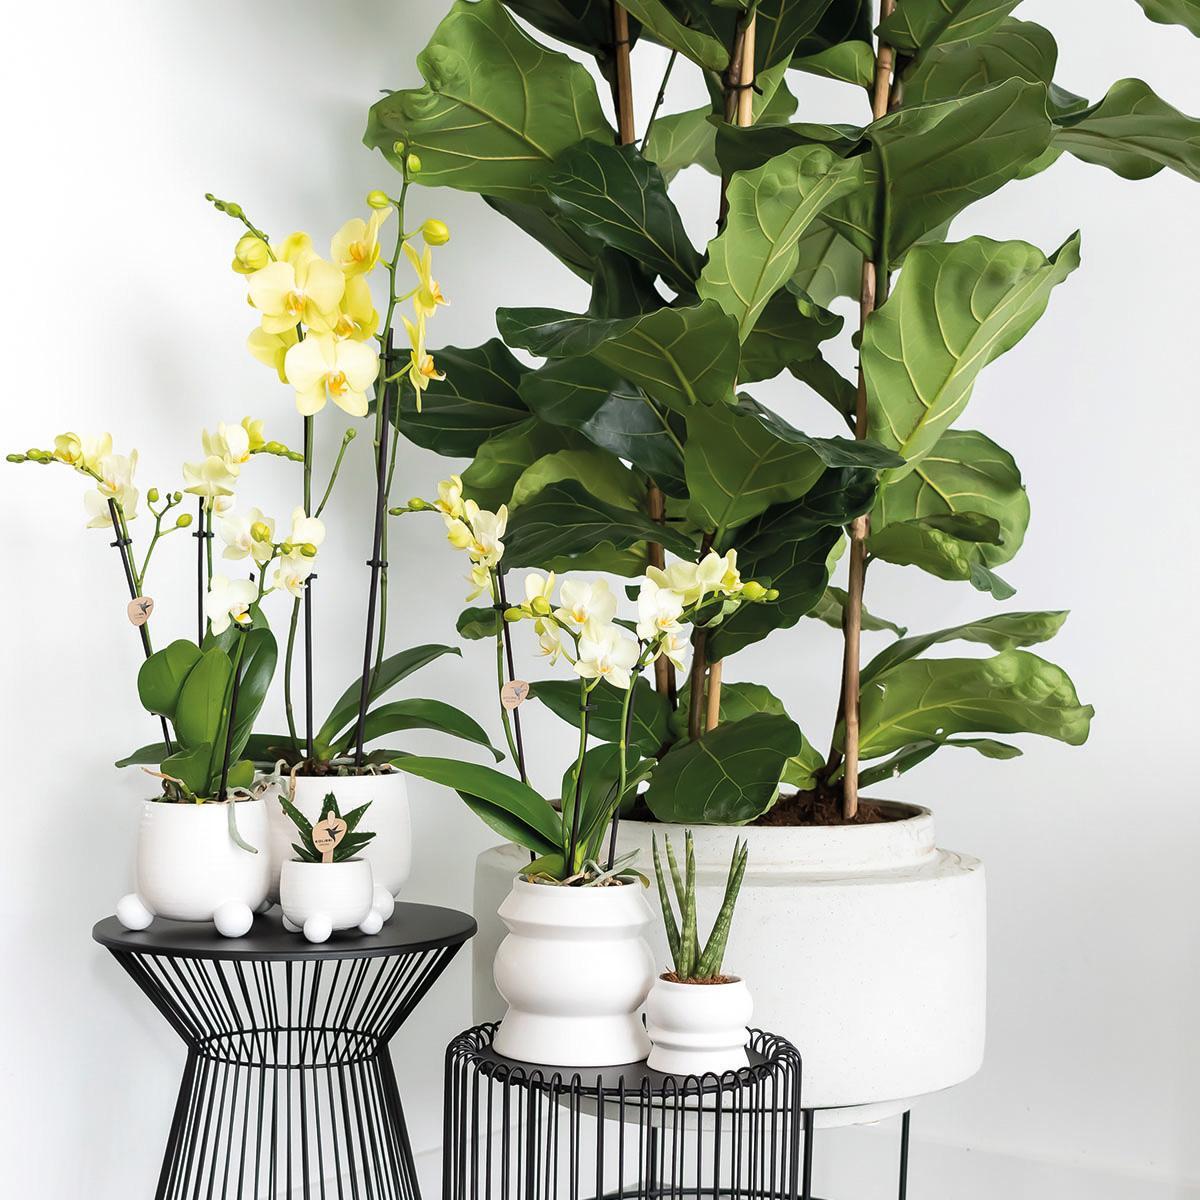 Set van 3 Rhipsalis mix planten, inclusief keramieken sierpotten met een diameter van 9 cm.